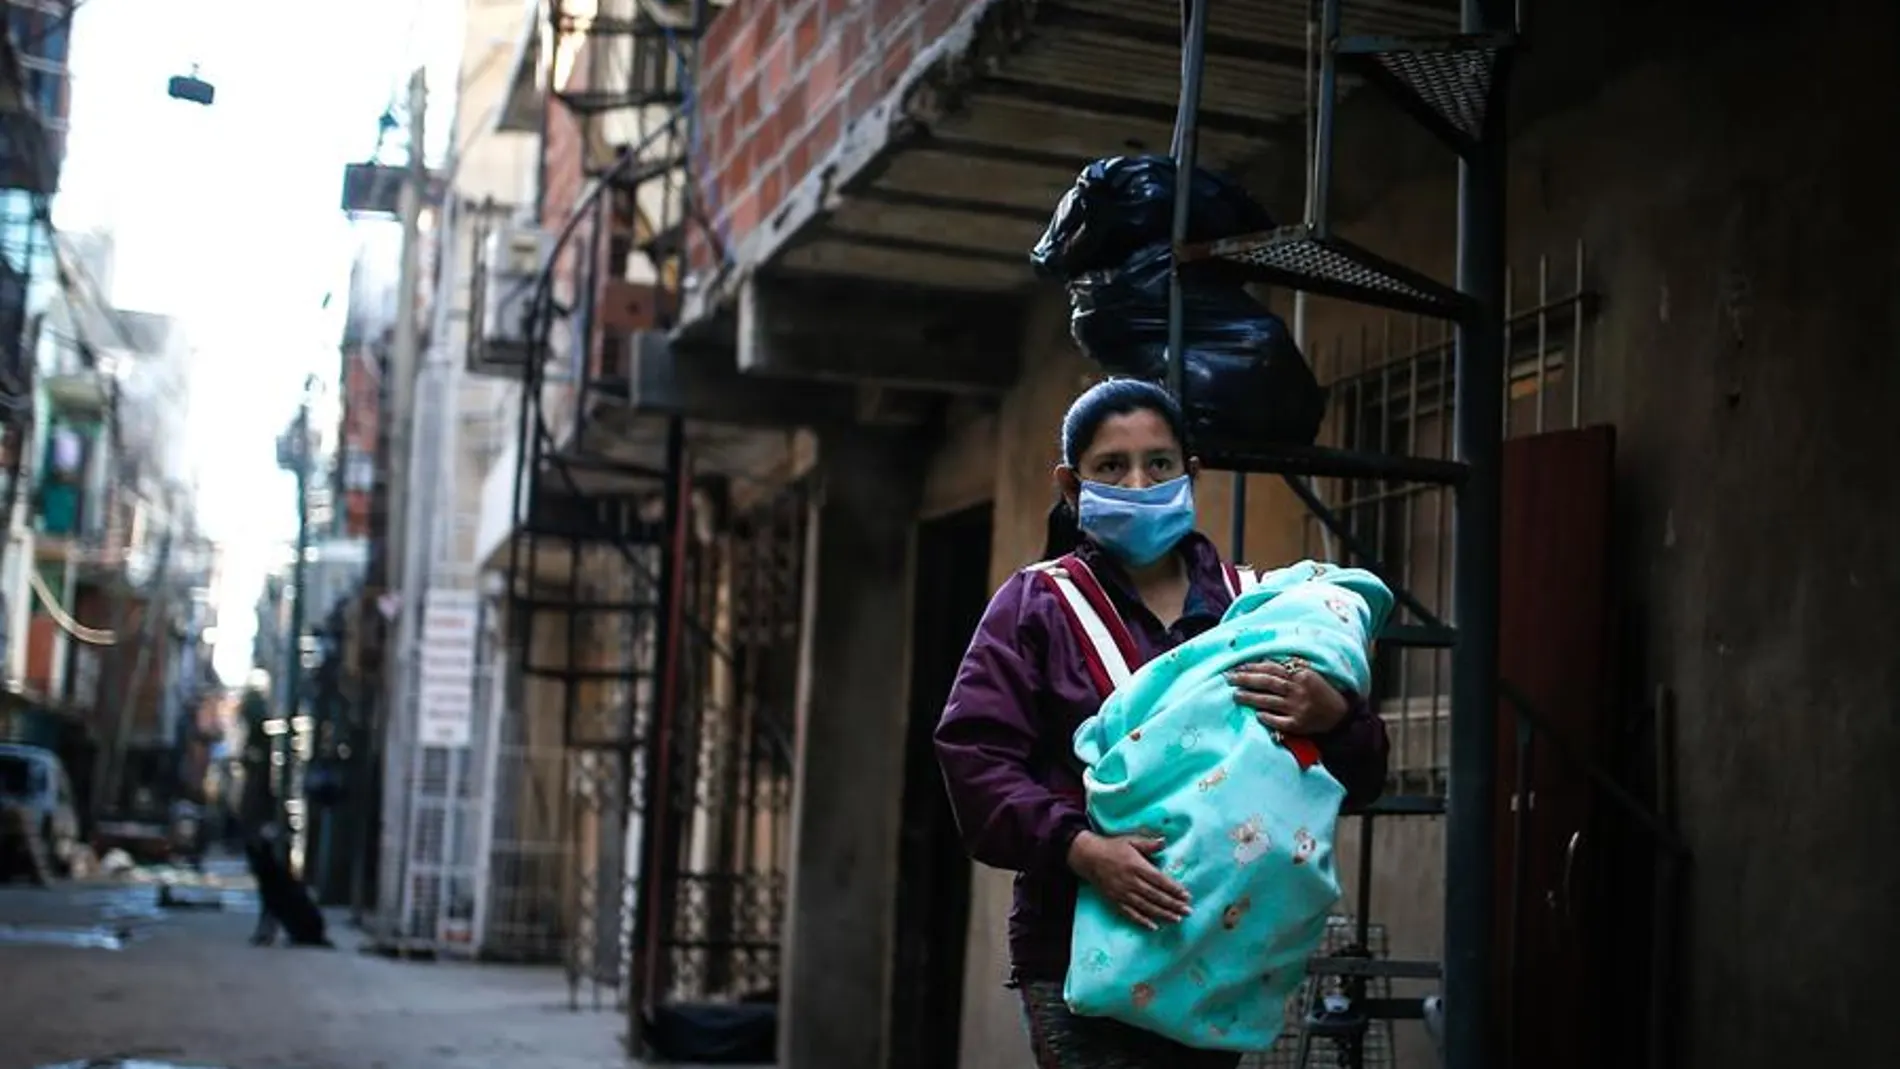 Una mujer con mascarilla lleva a su bebé por una calle de la Villa 31, Buenos Aires